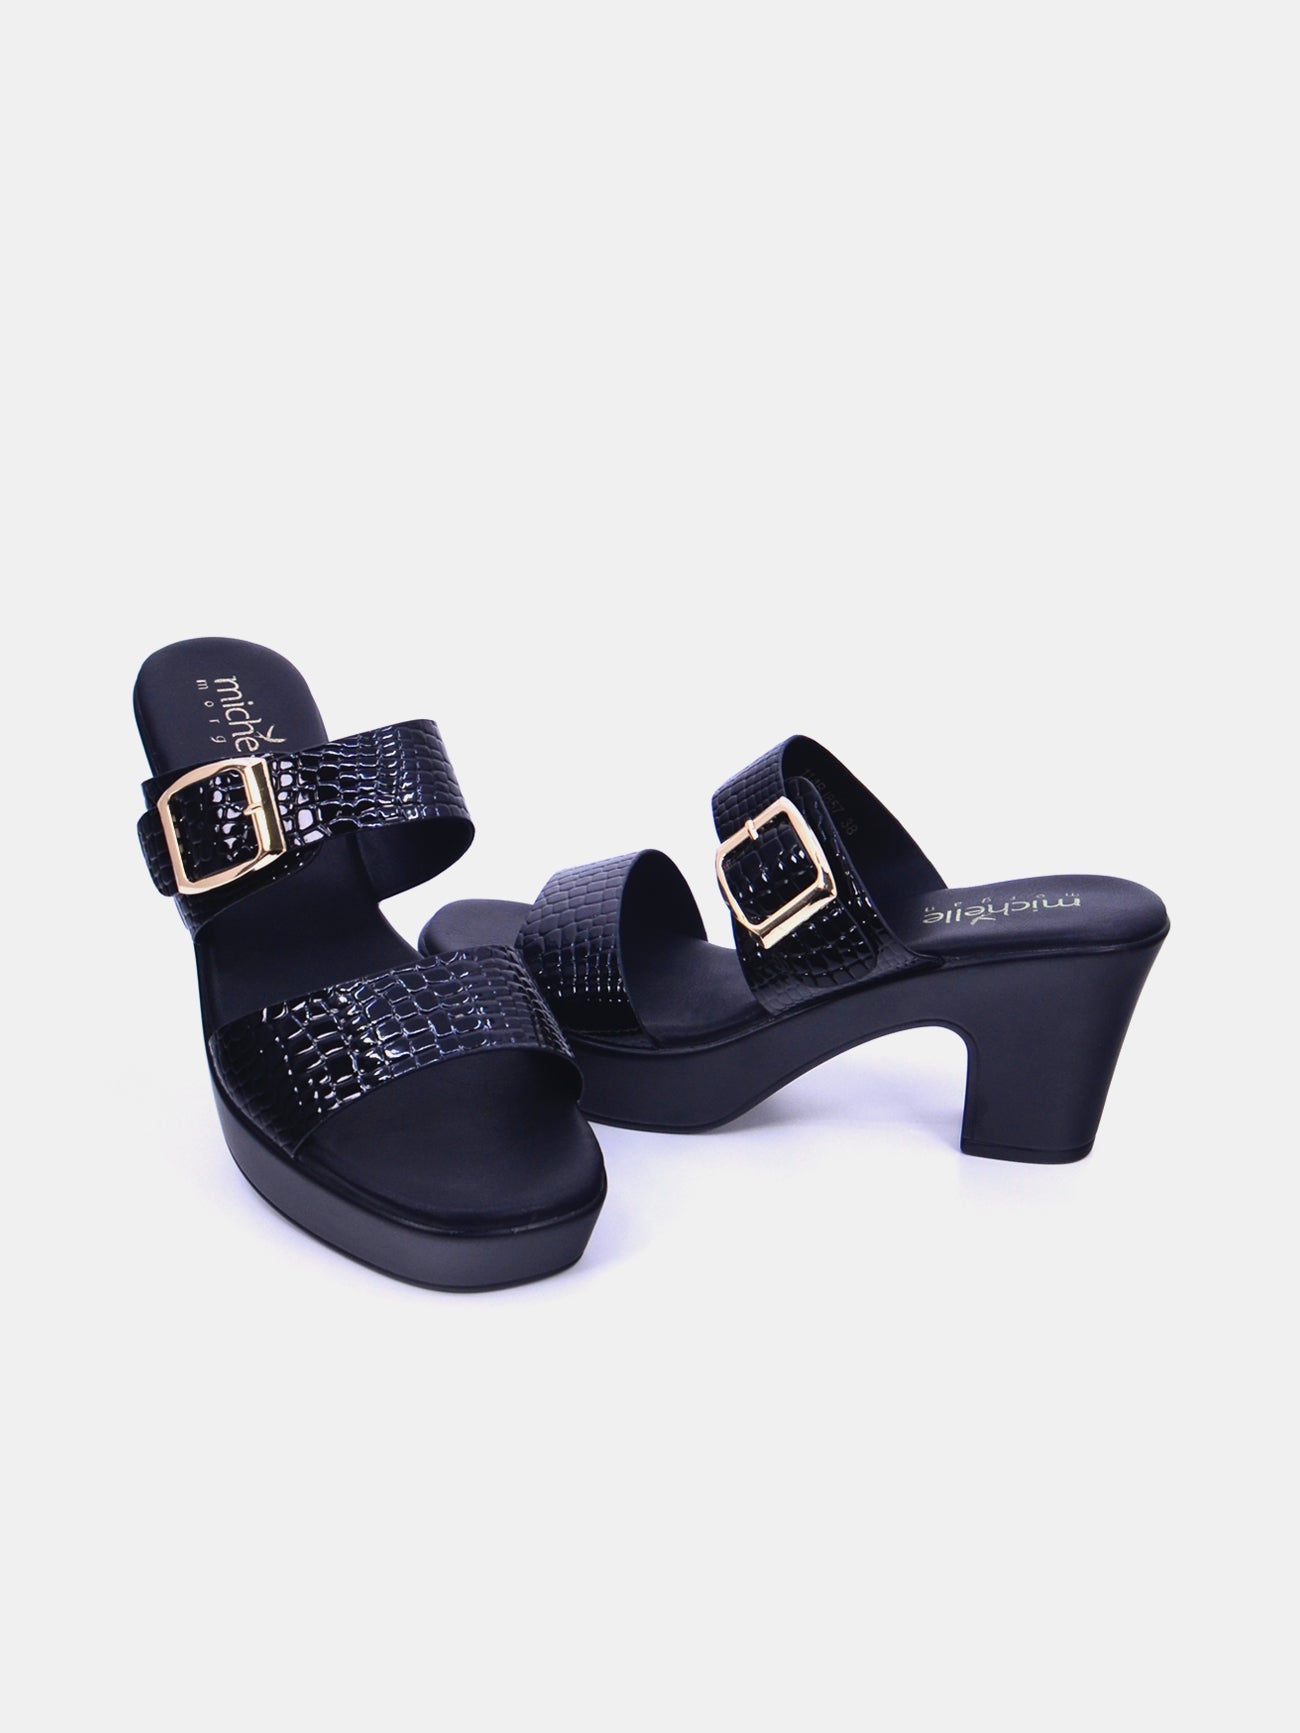 Michelle Morgan 114RJ857 Women's Heeled Sandals #color_Black